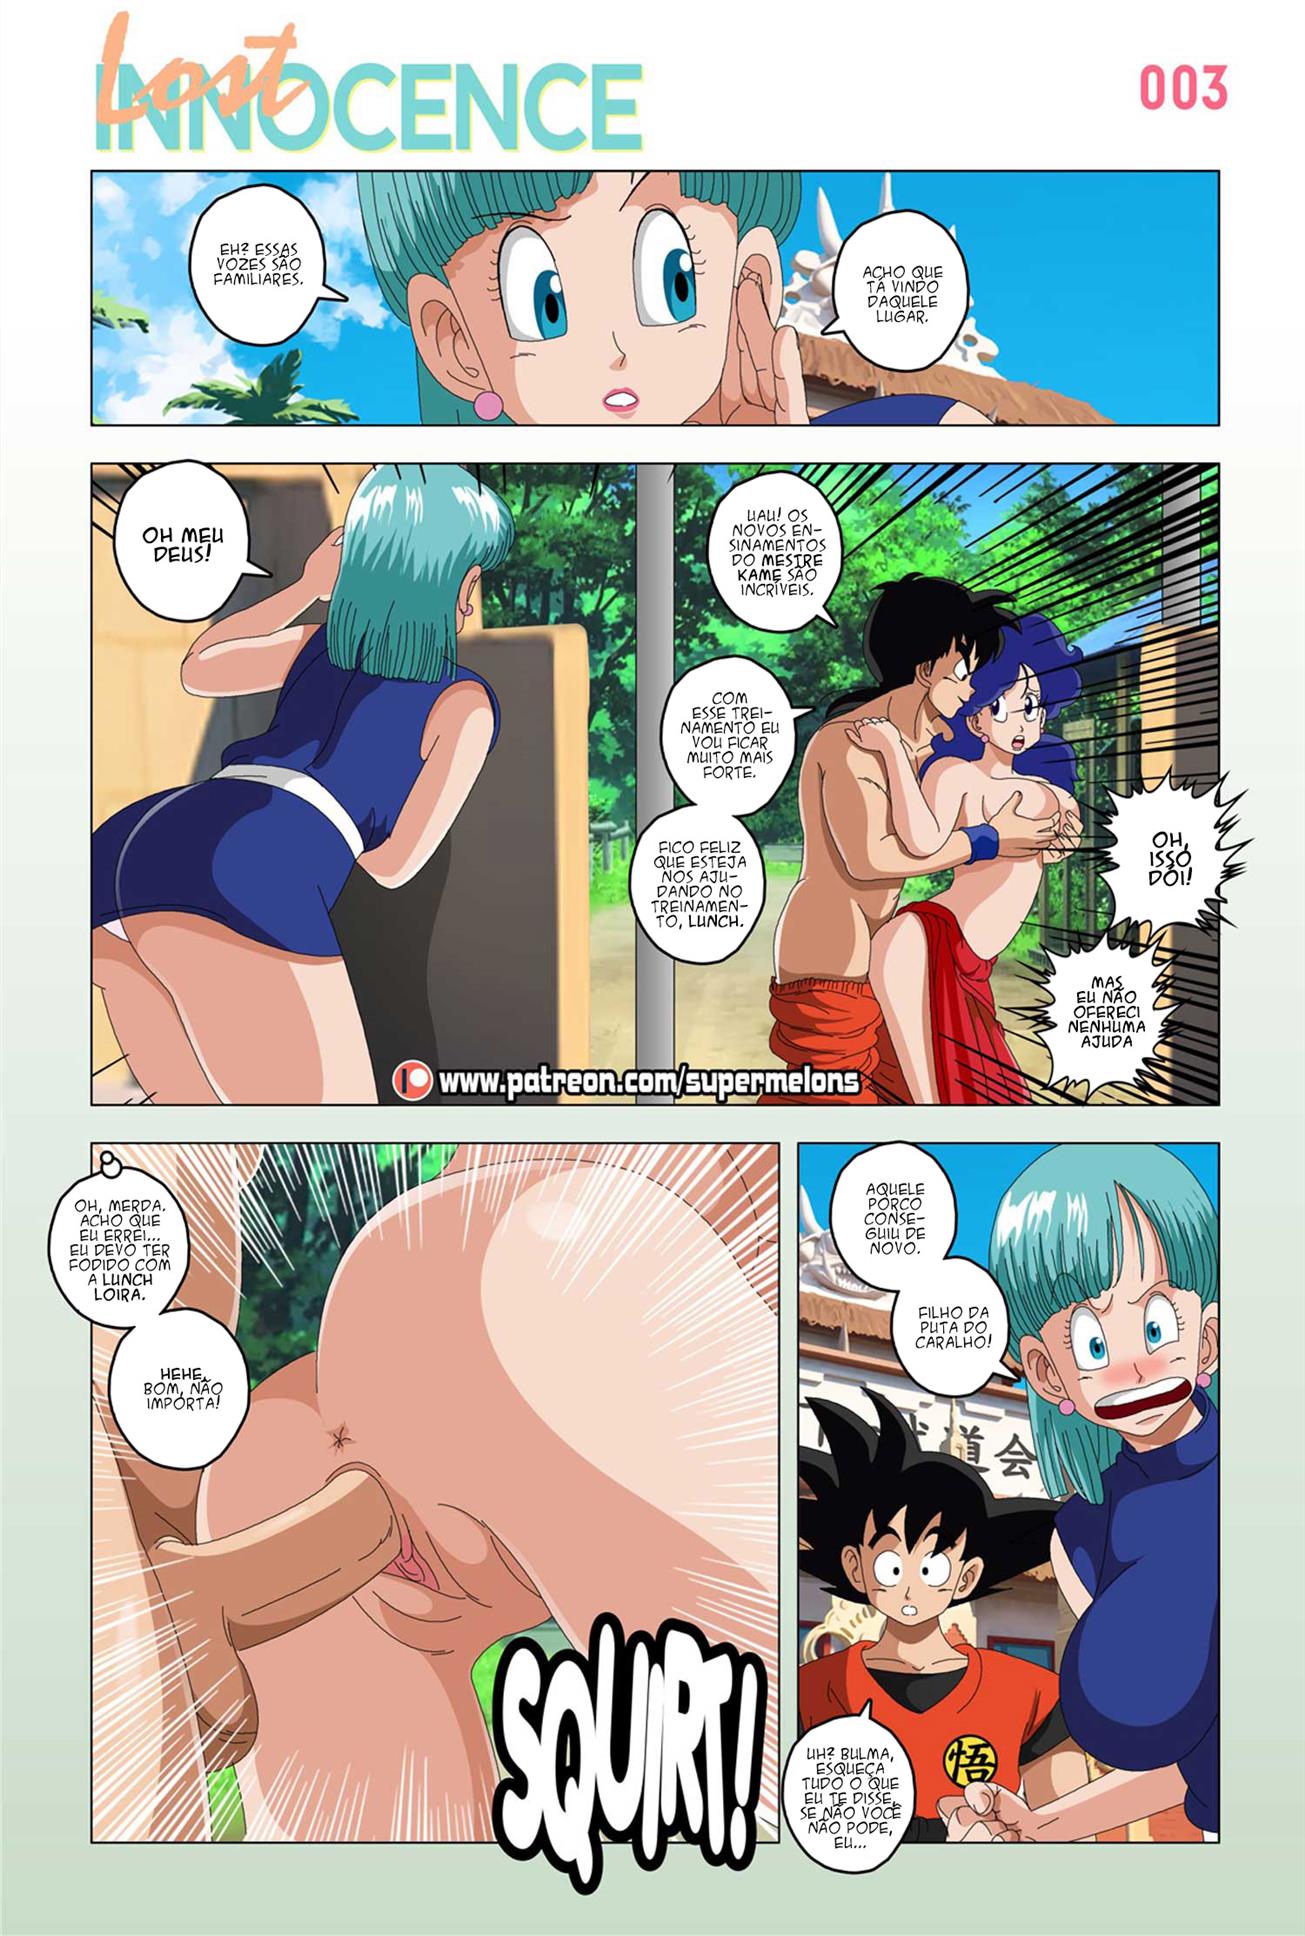 Dragon Ball Hentai: Goku perde a inocência